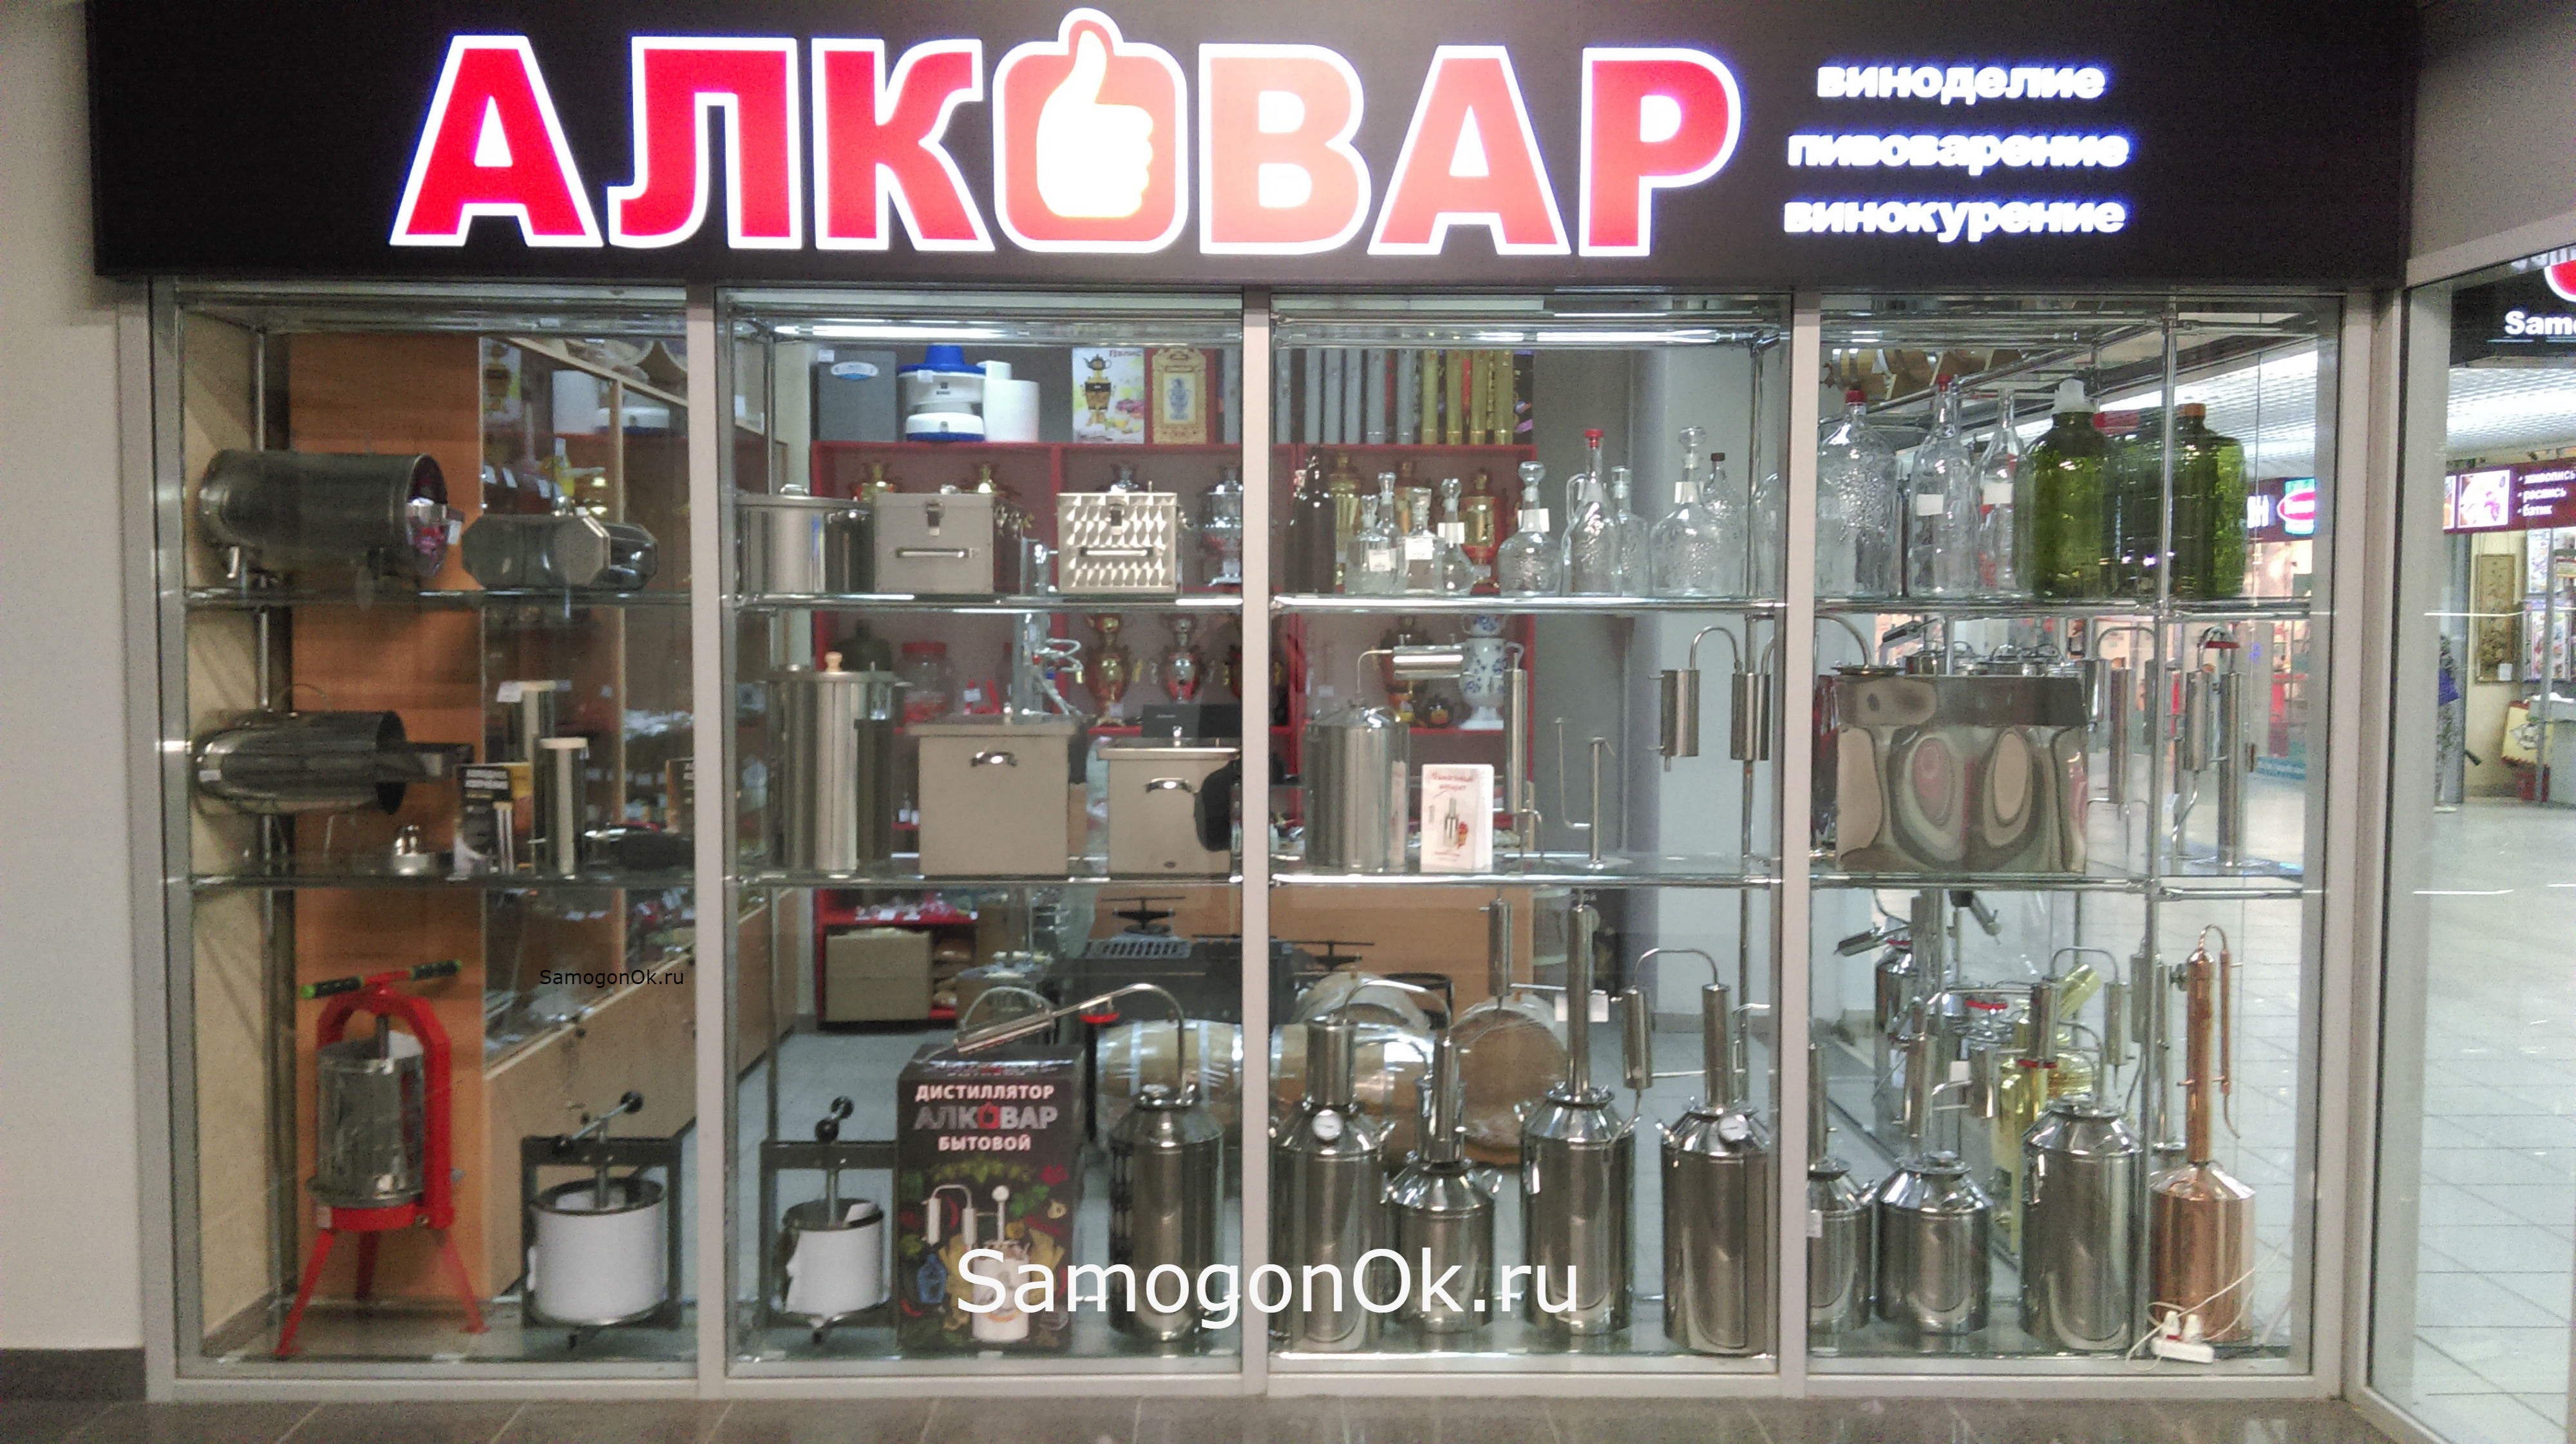 Магазин АЛКОВАР от SamogonOk.ru в Самаре ТРК Космопорт